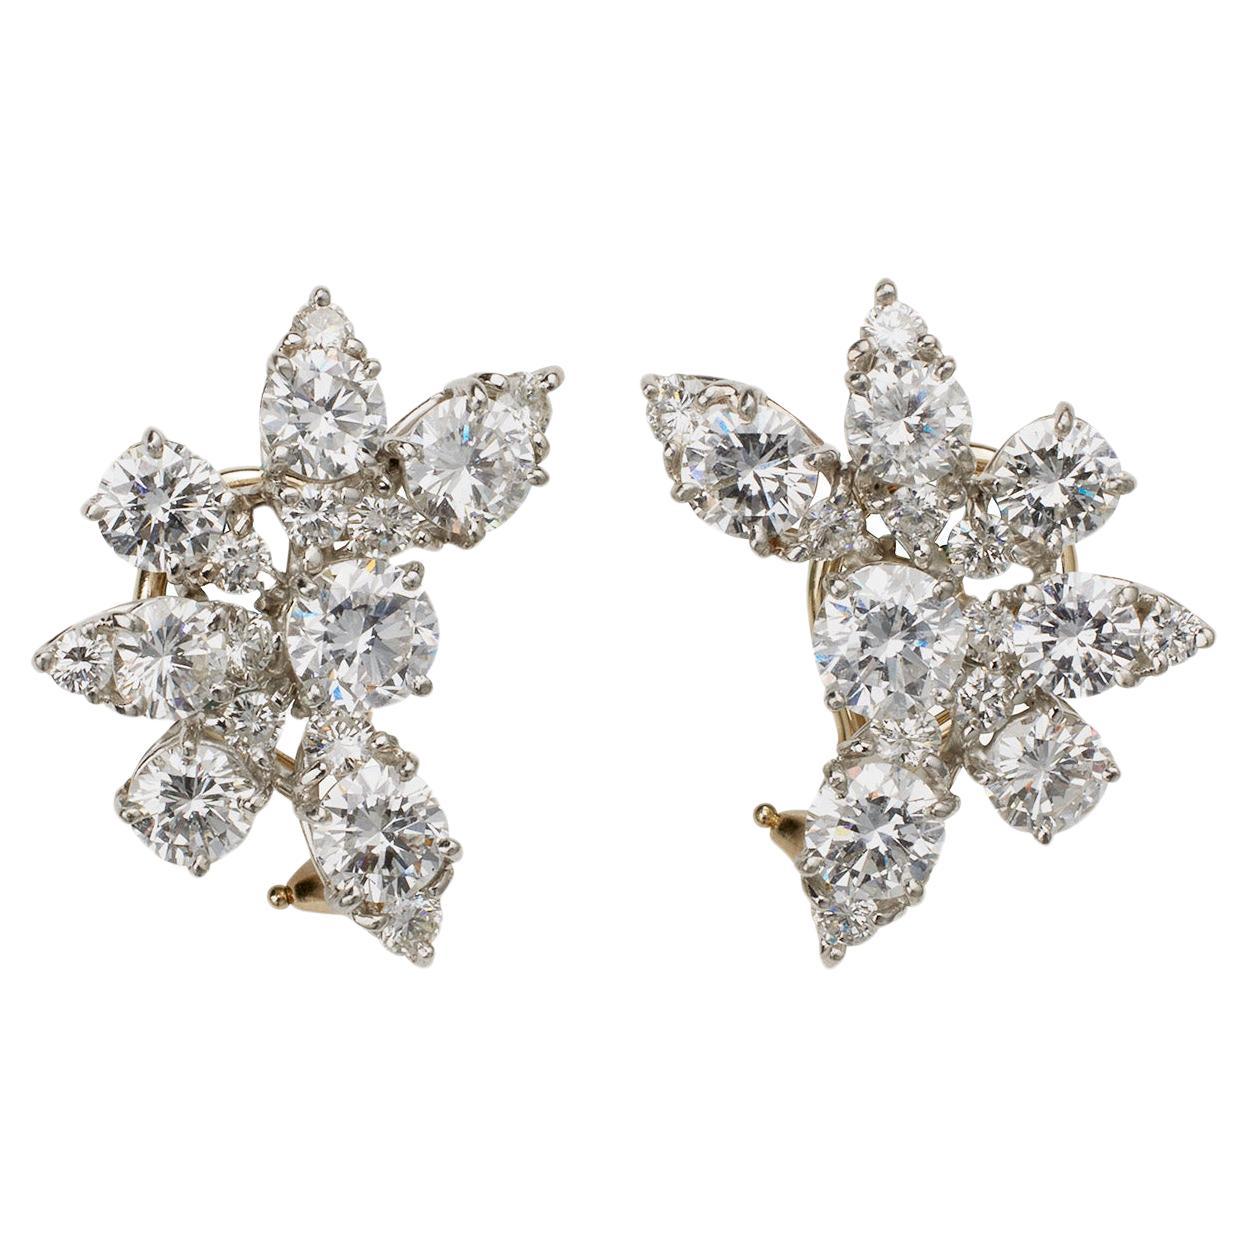 Van Cleef & Arpels 1960s Diamond Clip Earrings